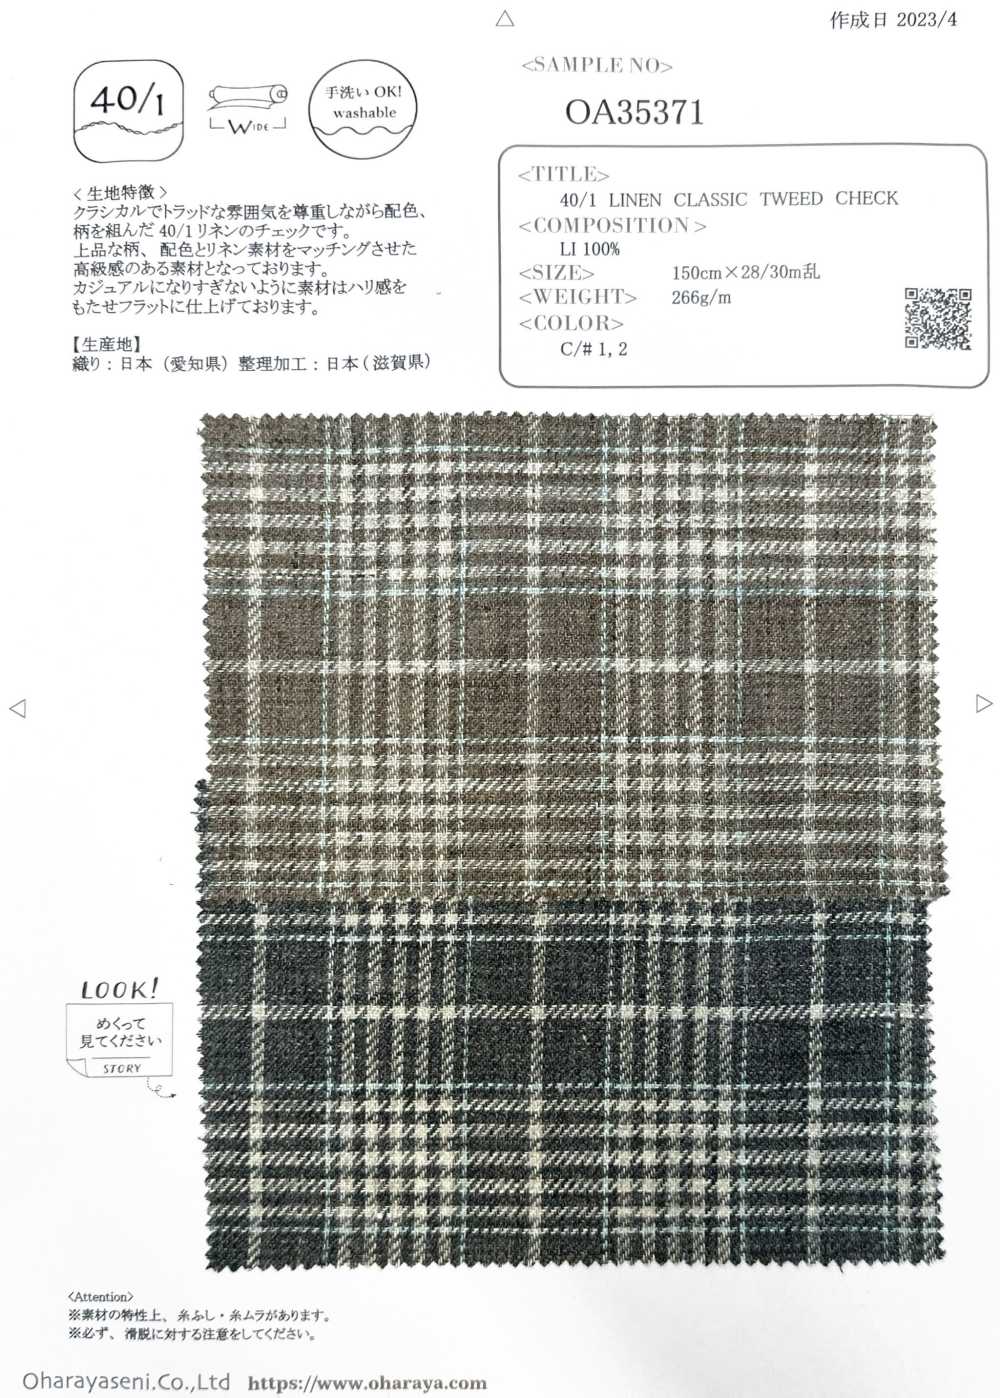 OA35371 TWEED CLASSICO IN LINO 40/1[Tessile / Tessuto] Oharayaseni